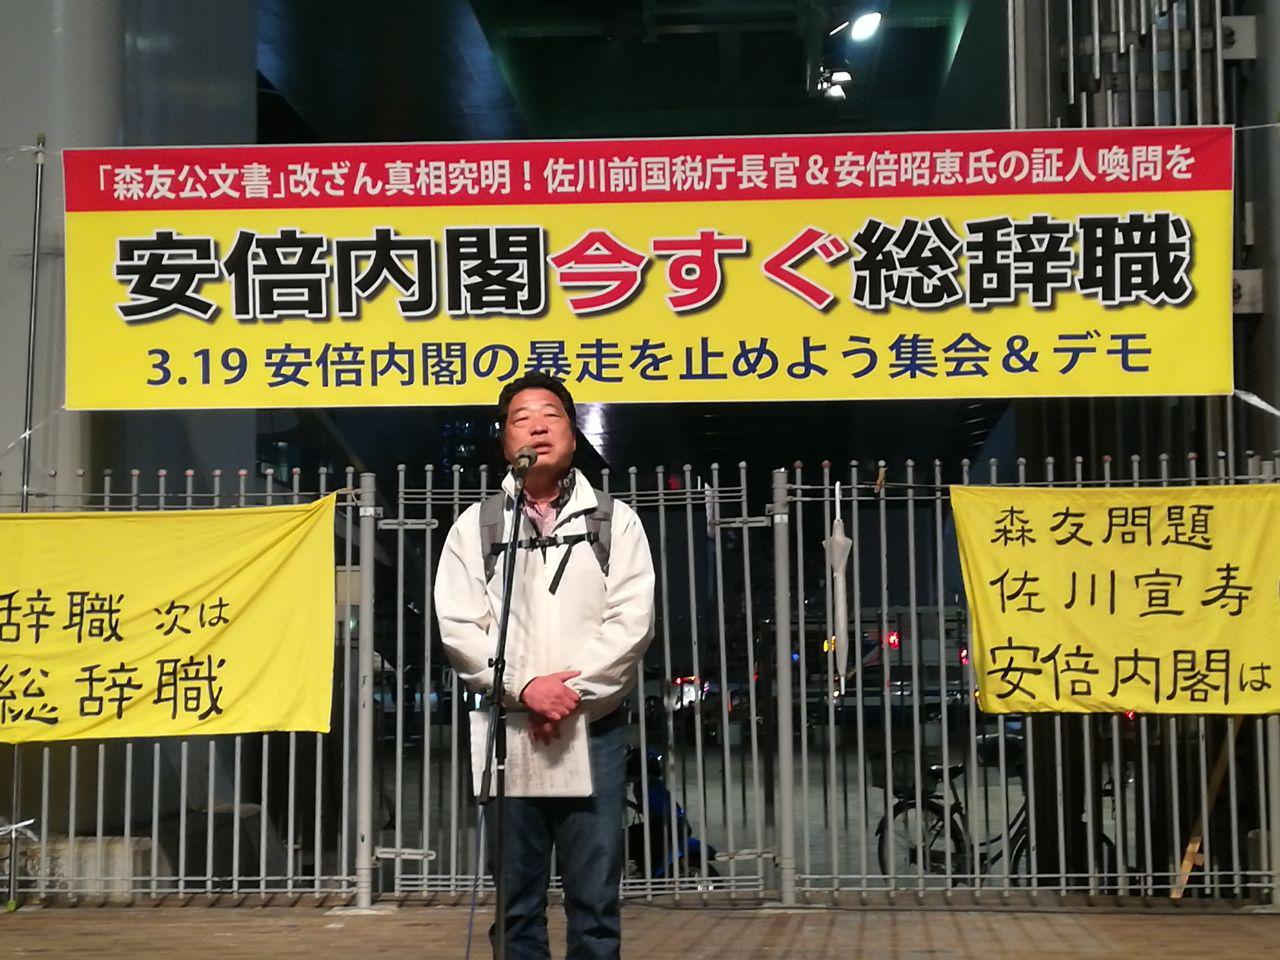 지난 19일 나고야에서 열린 '아베정권 폭주를 막는 공동행동' 집회에서 마지막 발언을 한 삼천리철도 한기덕 사무국장. 그는 "촛불혁명의 다음 차례가 일본이길 바란다"라고 말했다. 